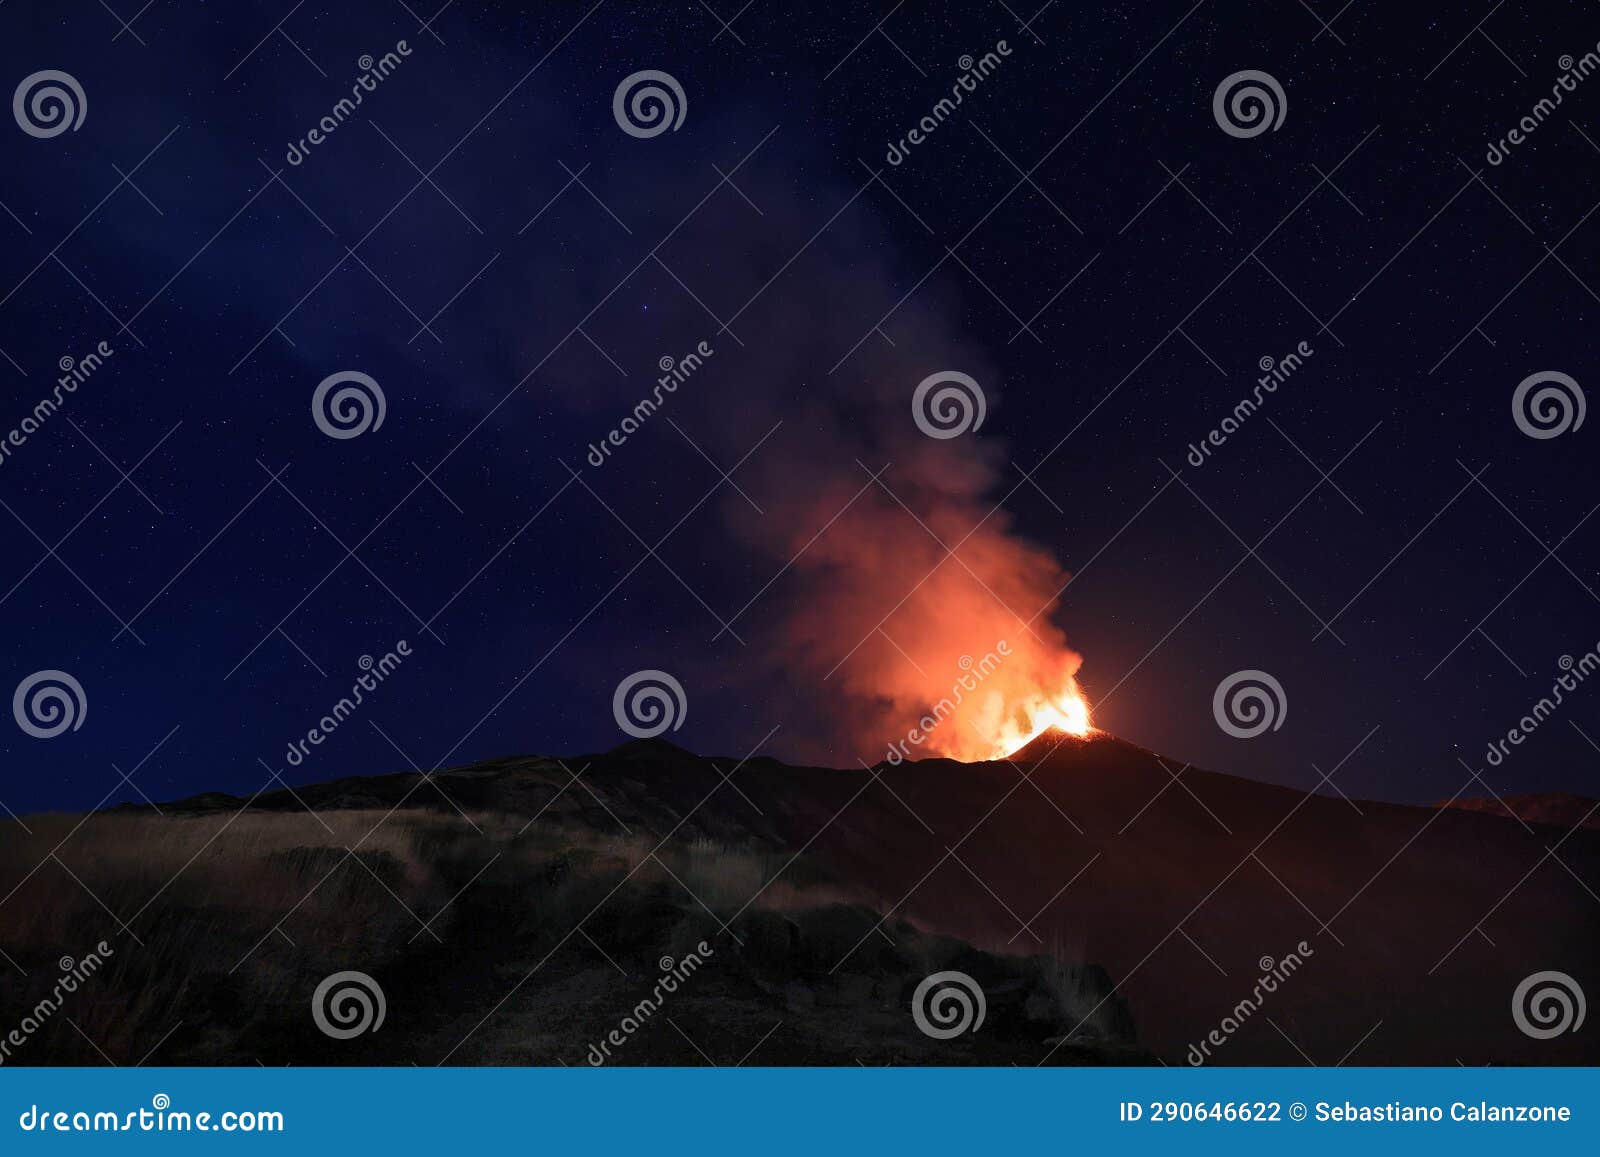 eruzione dell'etna con vista panoramica durante notte suggestiva con cielo stellato